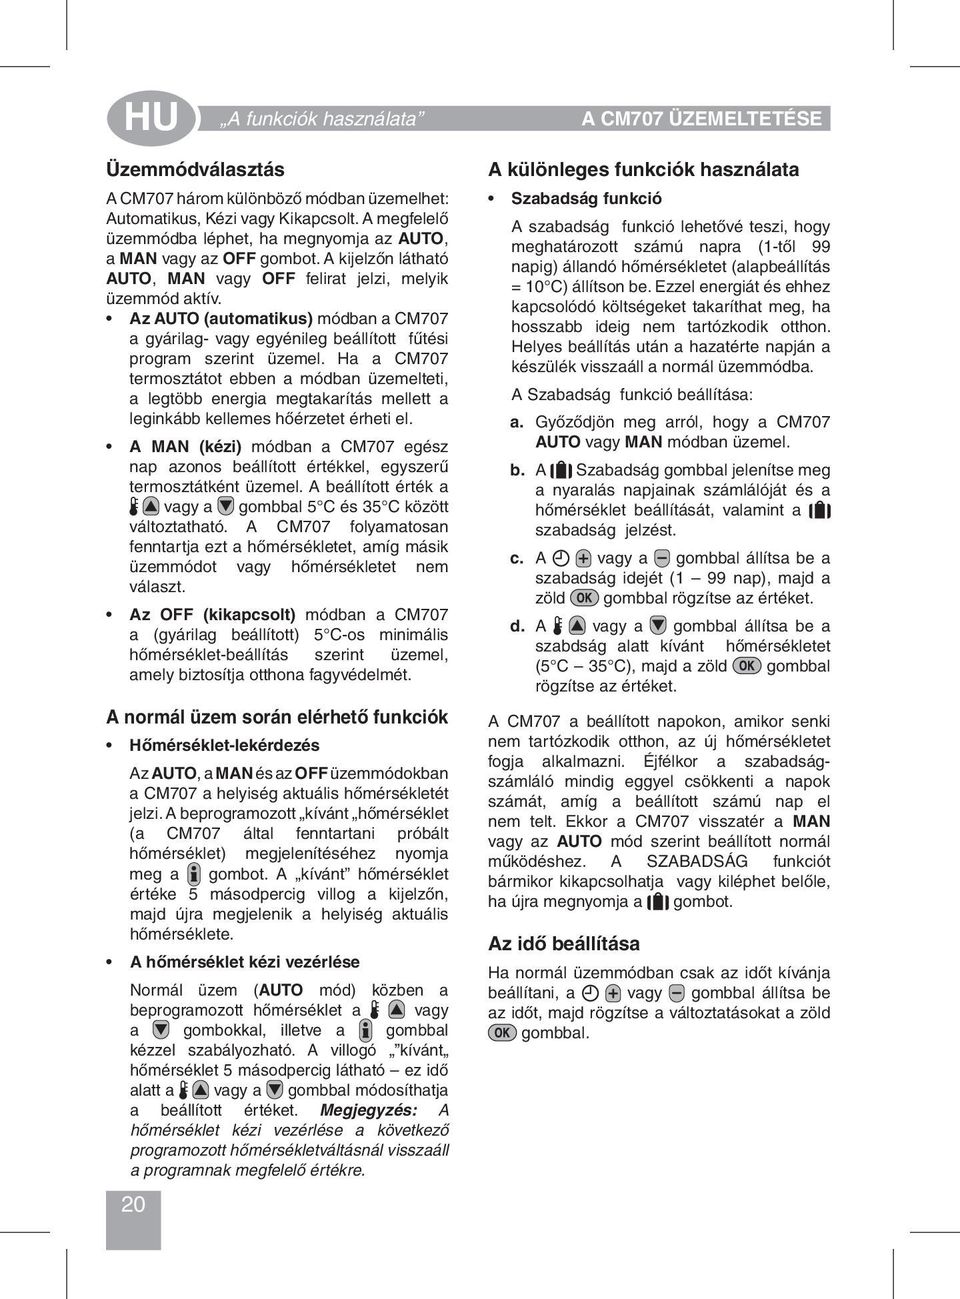 OFFMANAUTO CM707. HU Használati utasítás - PDF Ingyenes letöltés